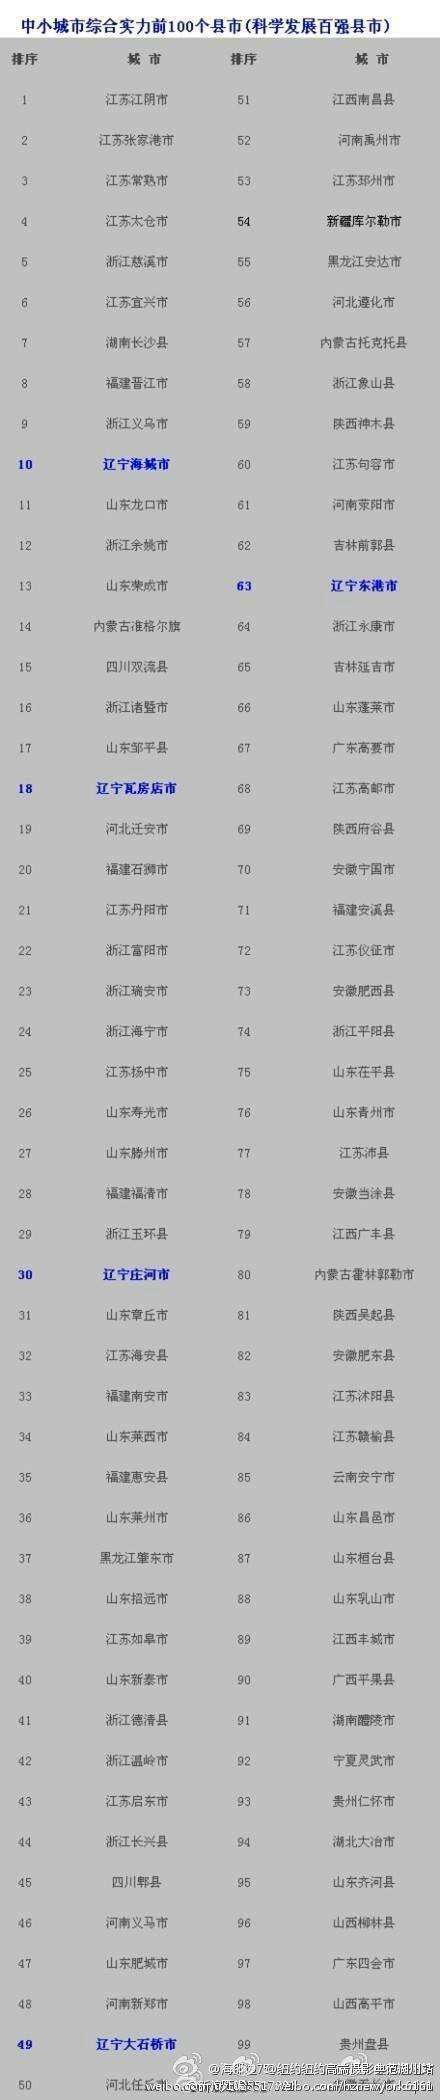 2014年中国百强县市排行榜出炉(图)